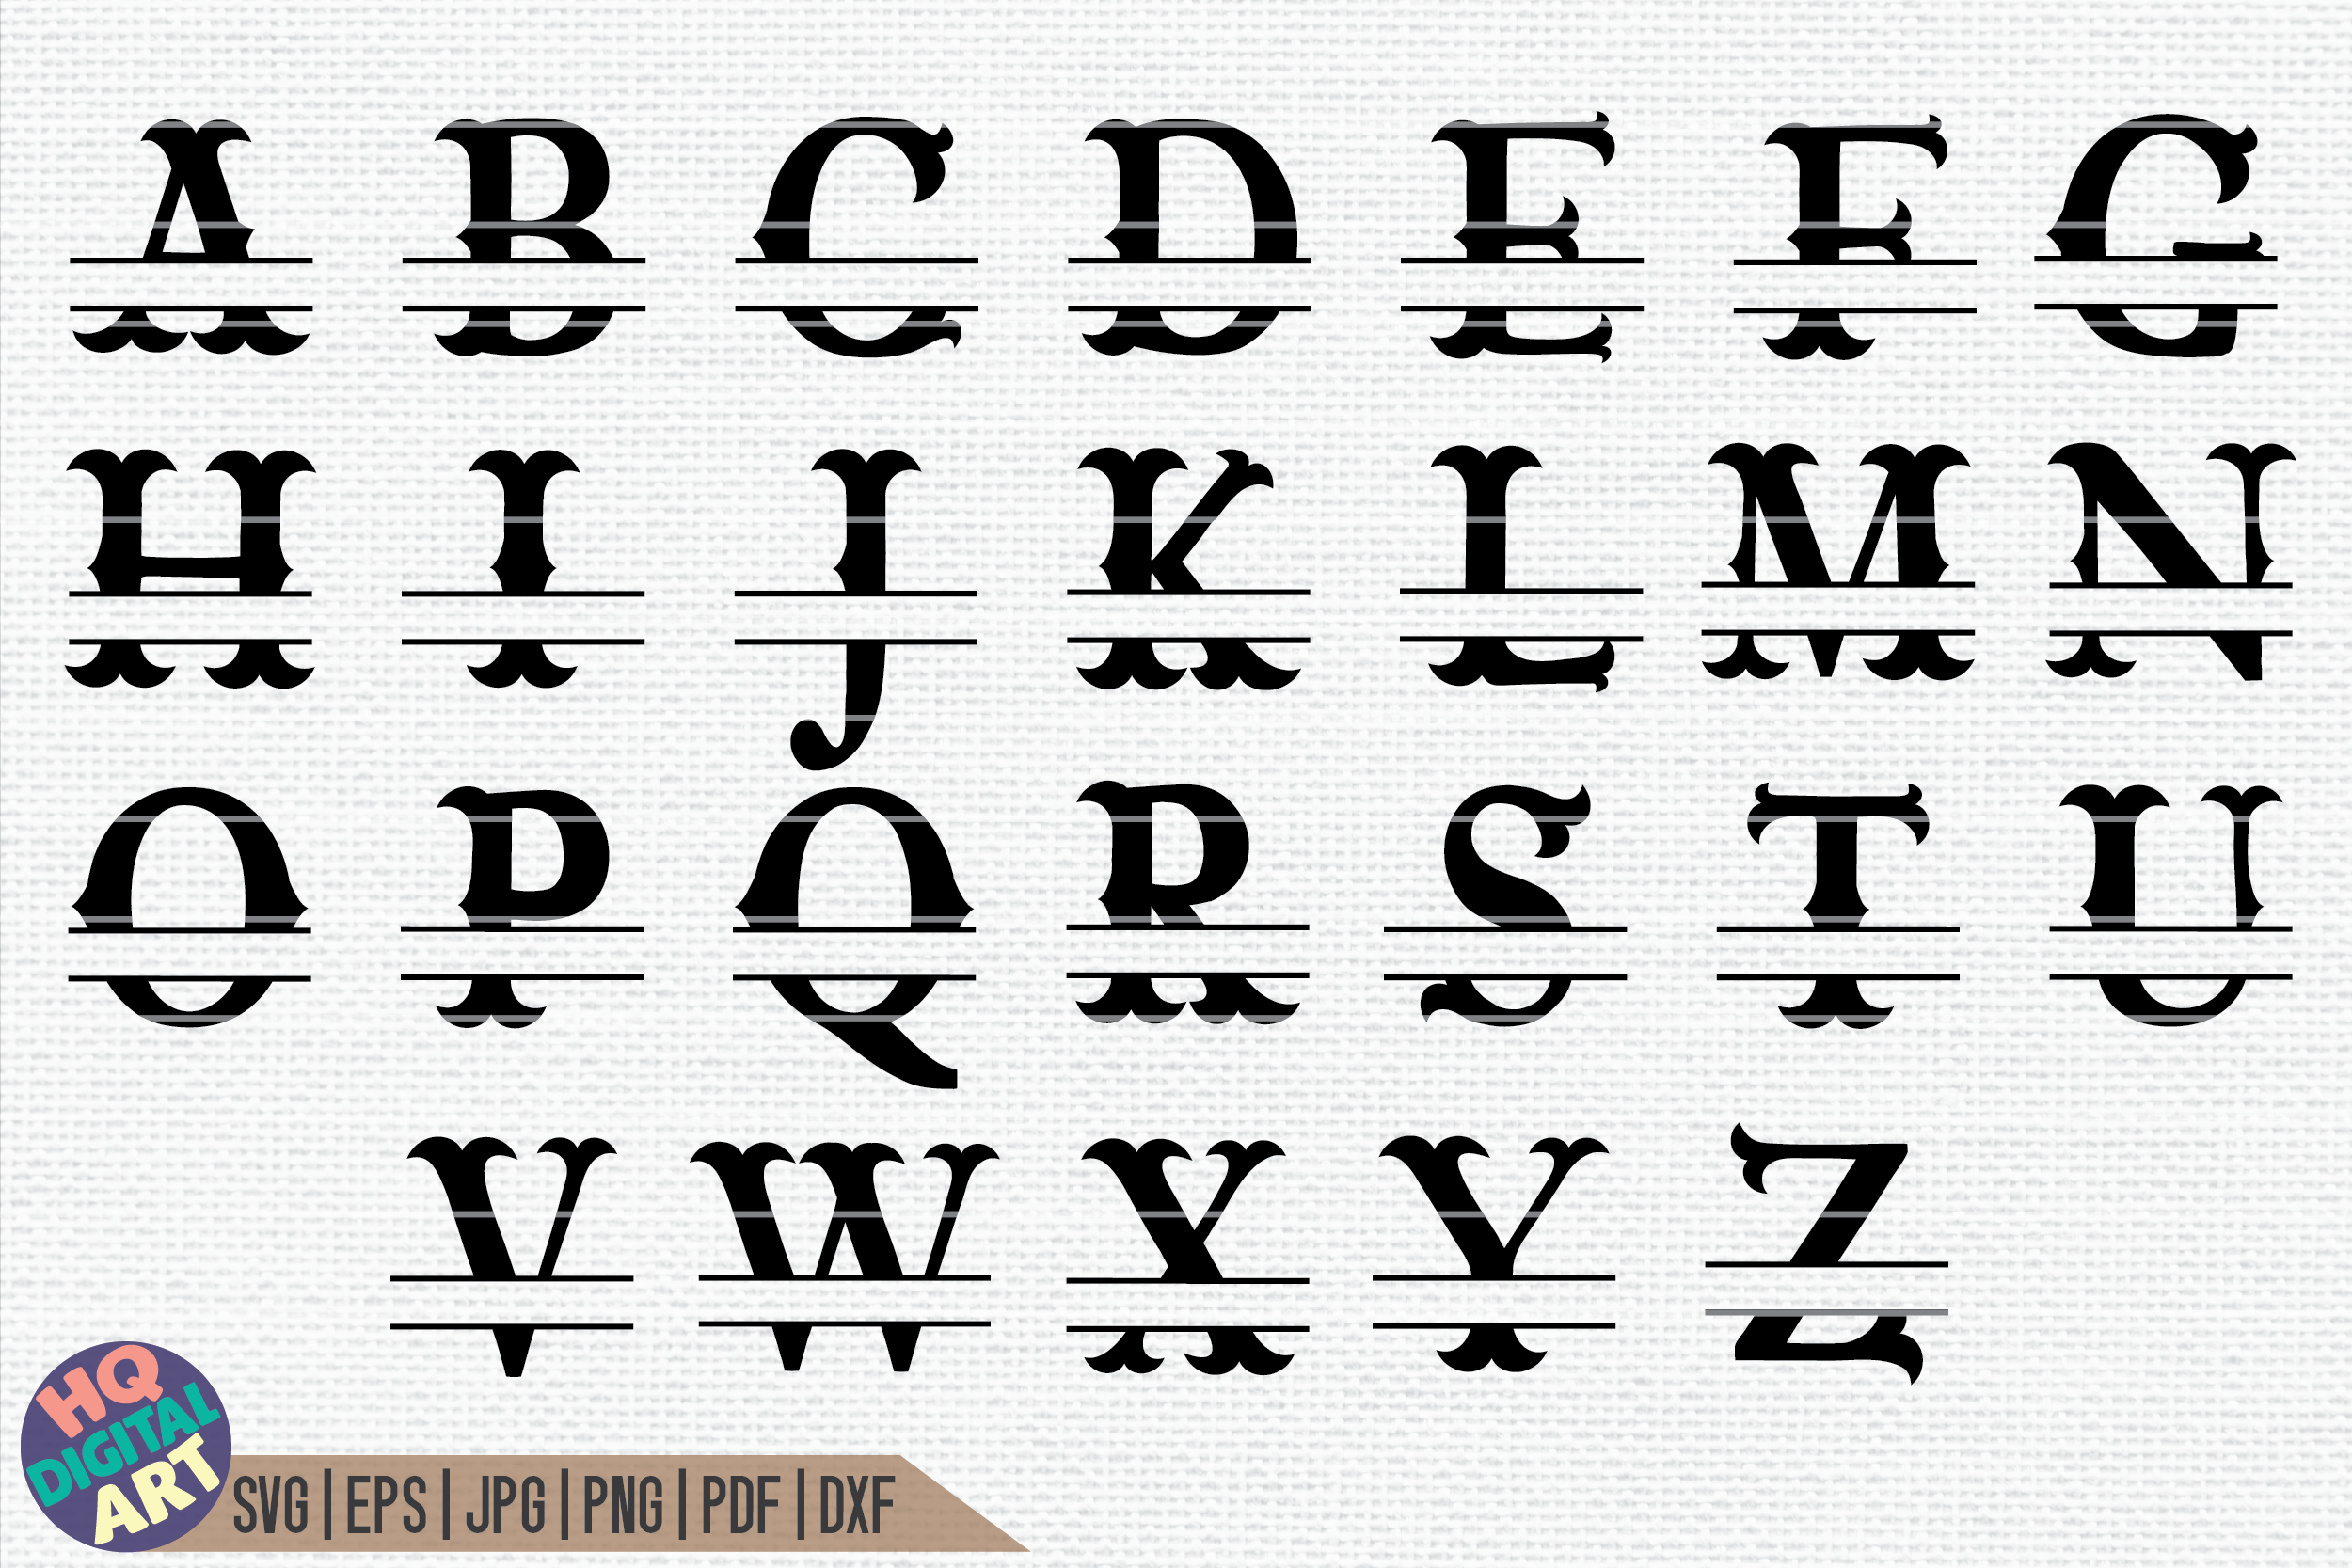 alphabet letters designs